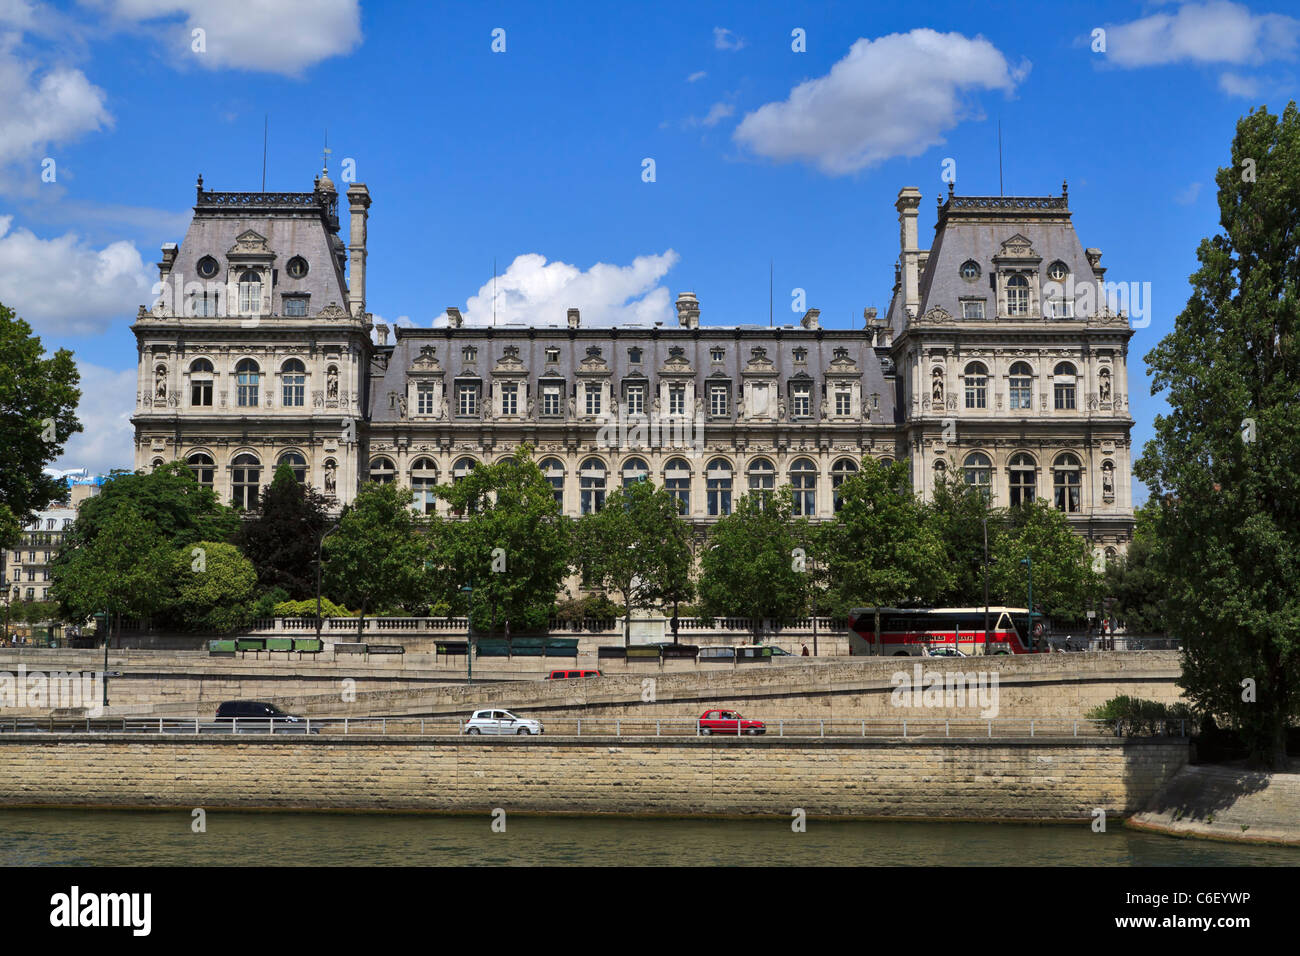 Hôtel de Ville, Paris, à partir de la Seine. La construction de maisons de style Renaissance française l'administration de la ville de Paris. Banque D'Images